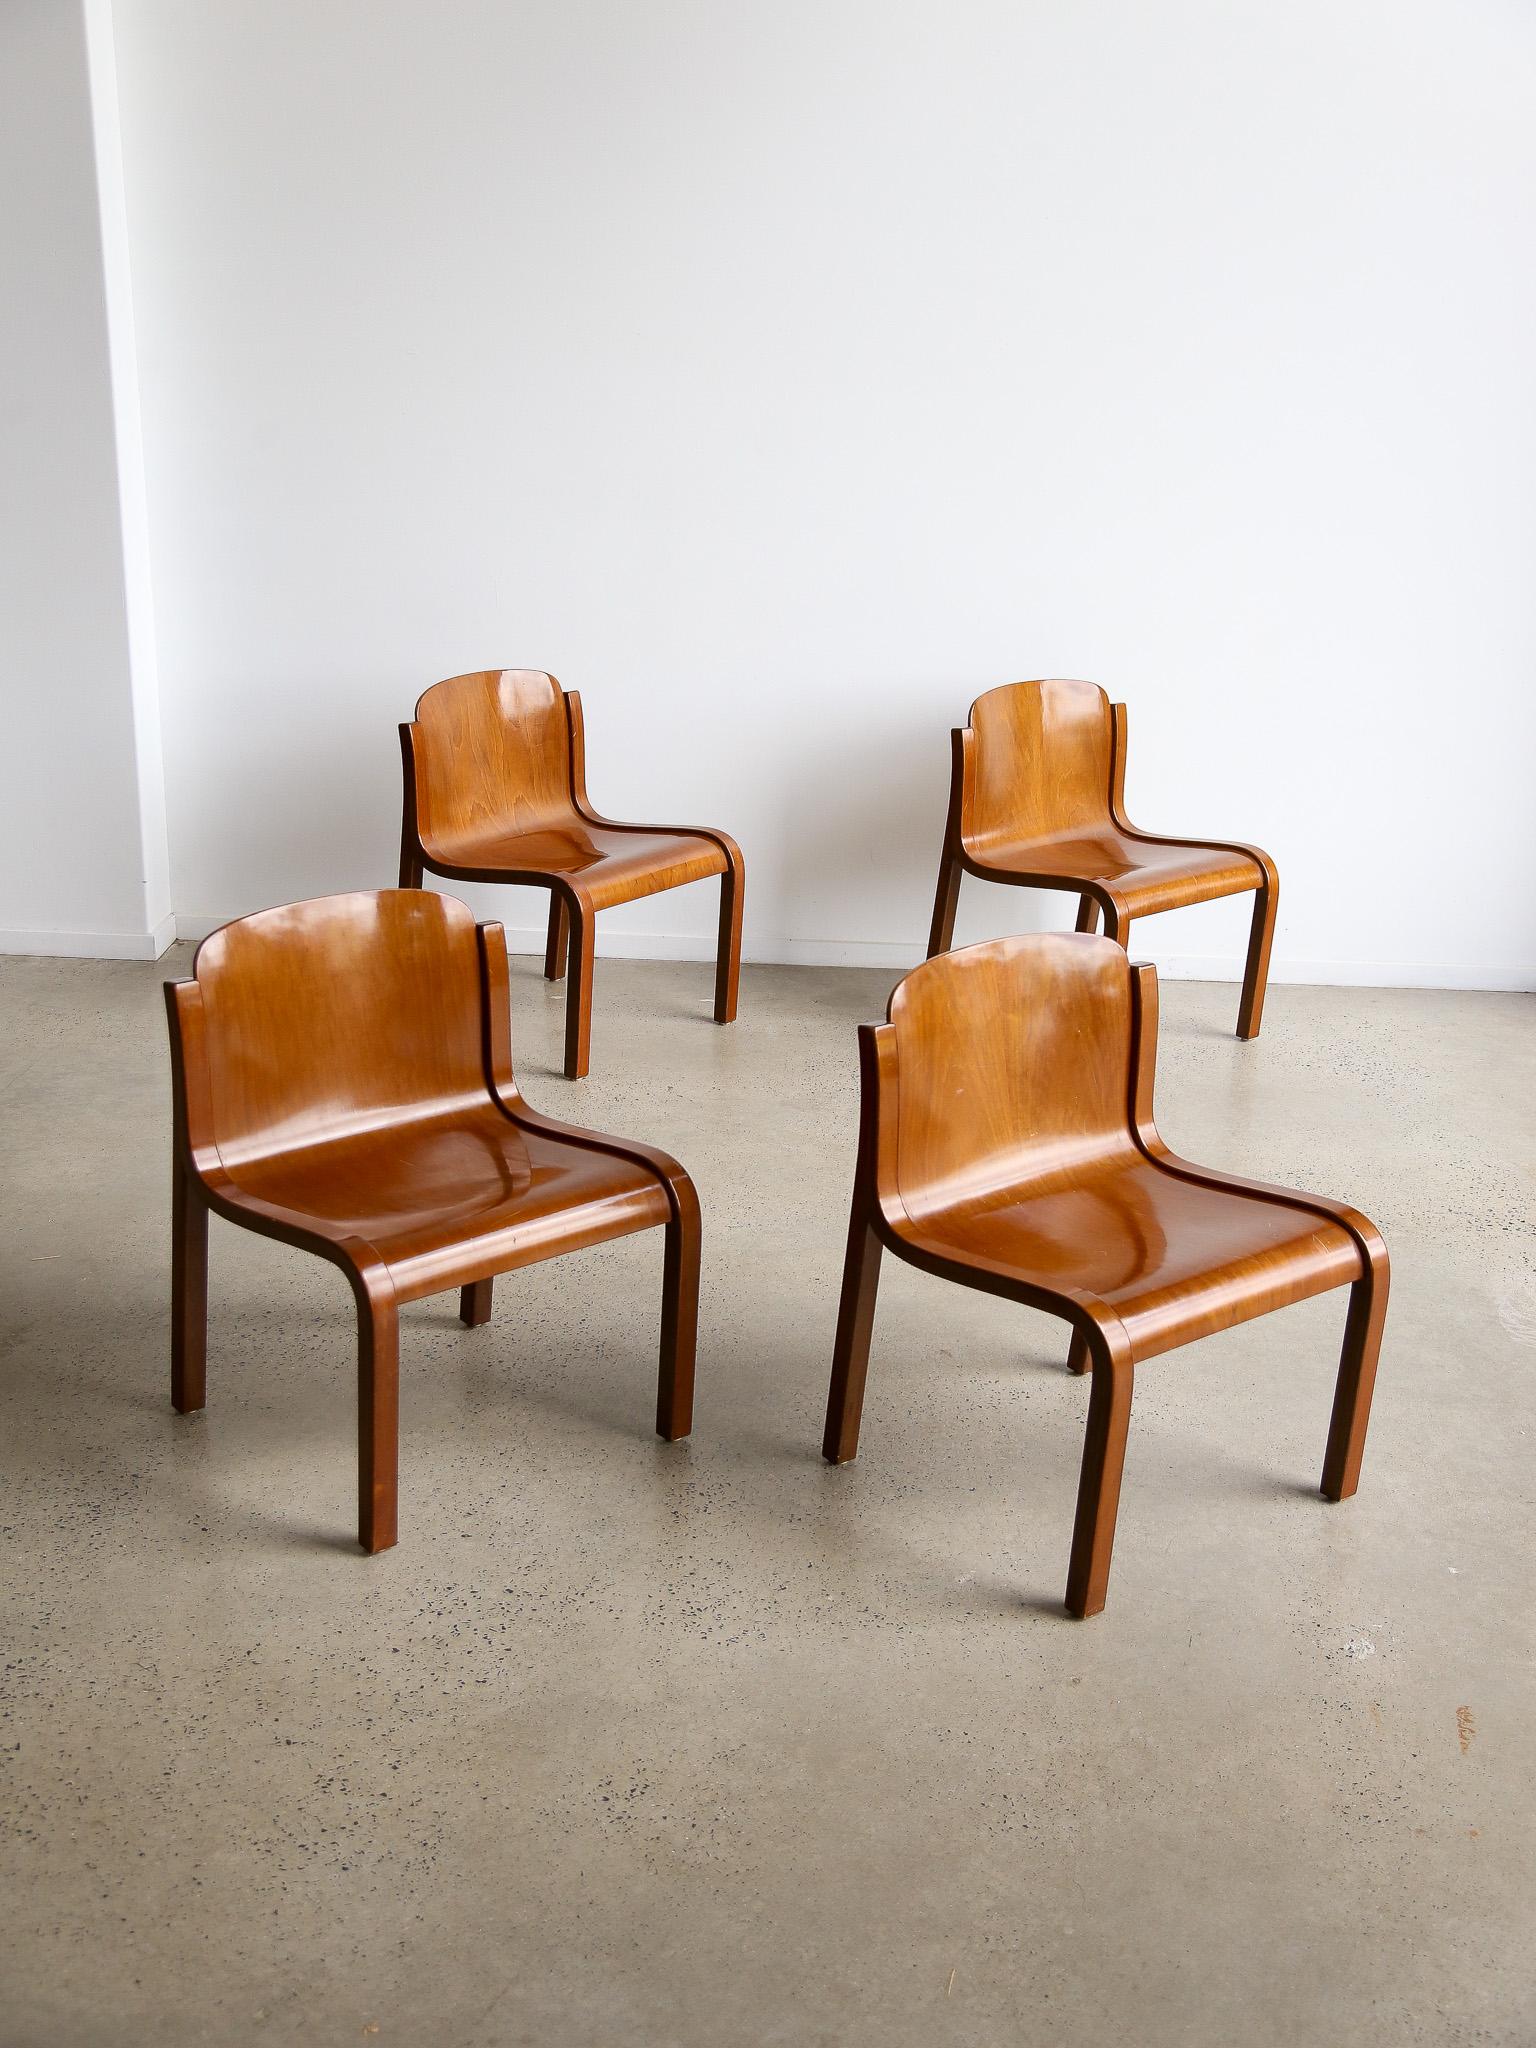 Mid Century Modern Satz von vier Mito Stühlen von Carlo Bartoli für Tisettanta. Diese Stühle sind extrem leicht und werden aus einer gebogenen Sperrholzplatte mit Buchengestell hergestellt.  

Carlo Bartoli (1931-2018) war ein italienischer